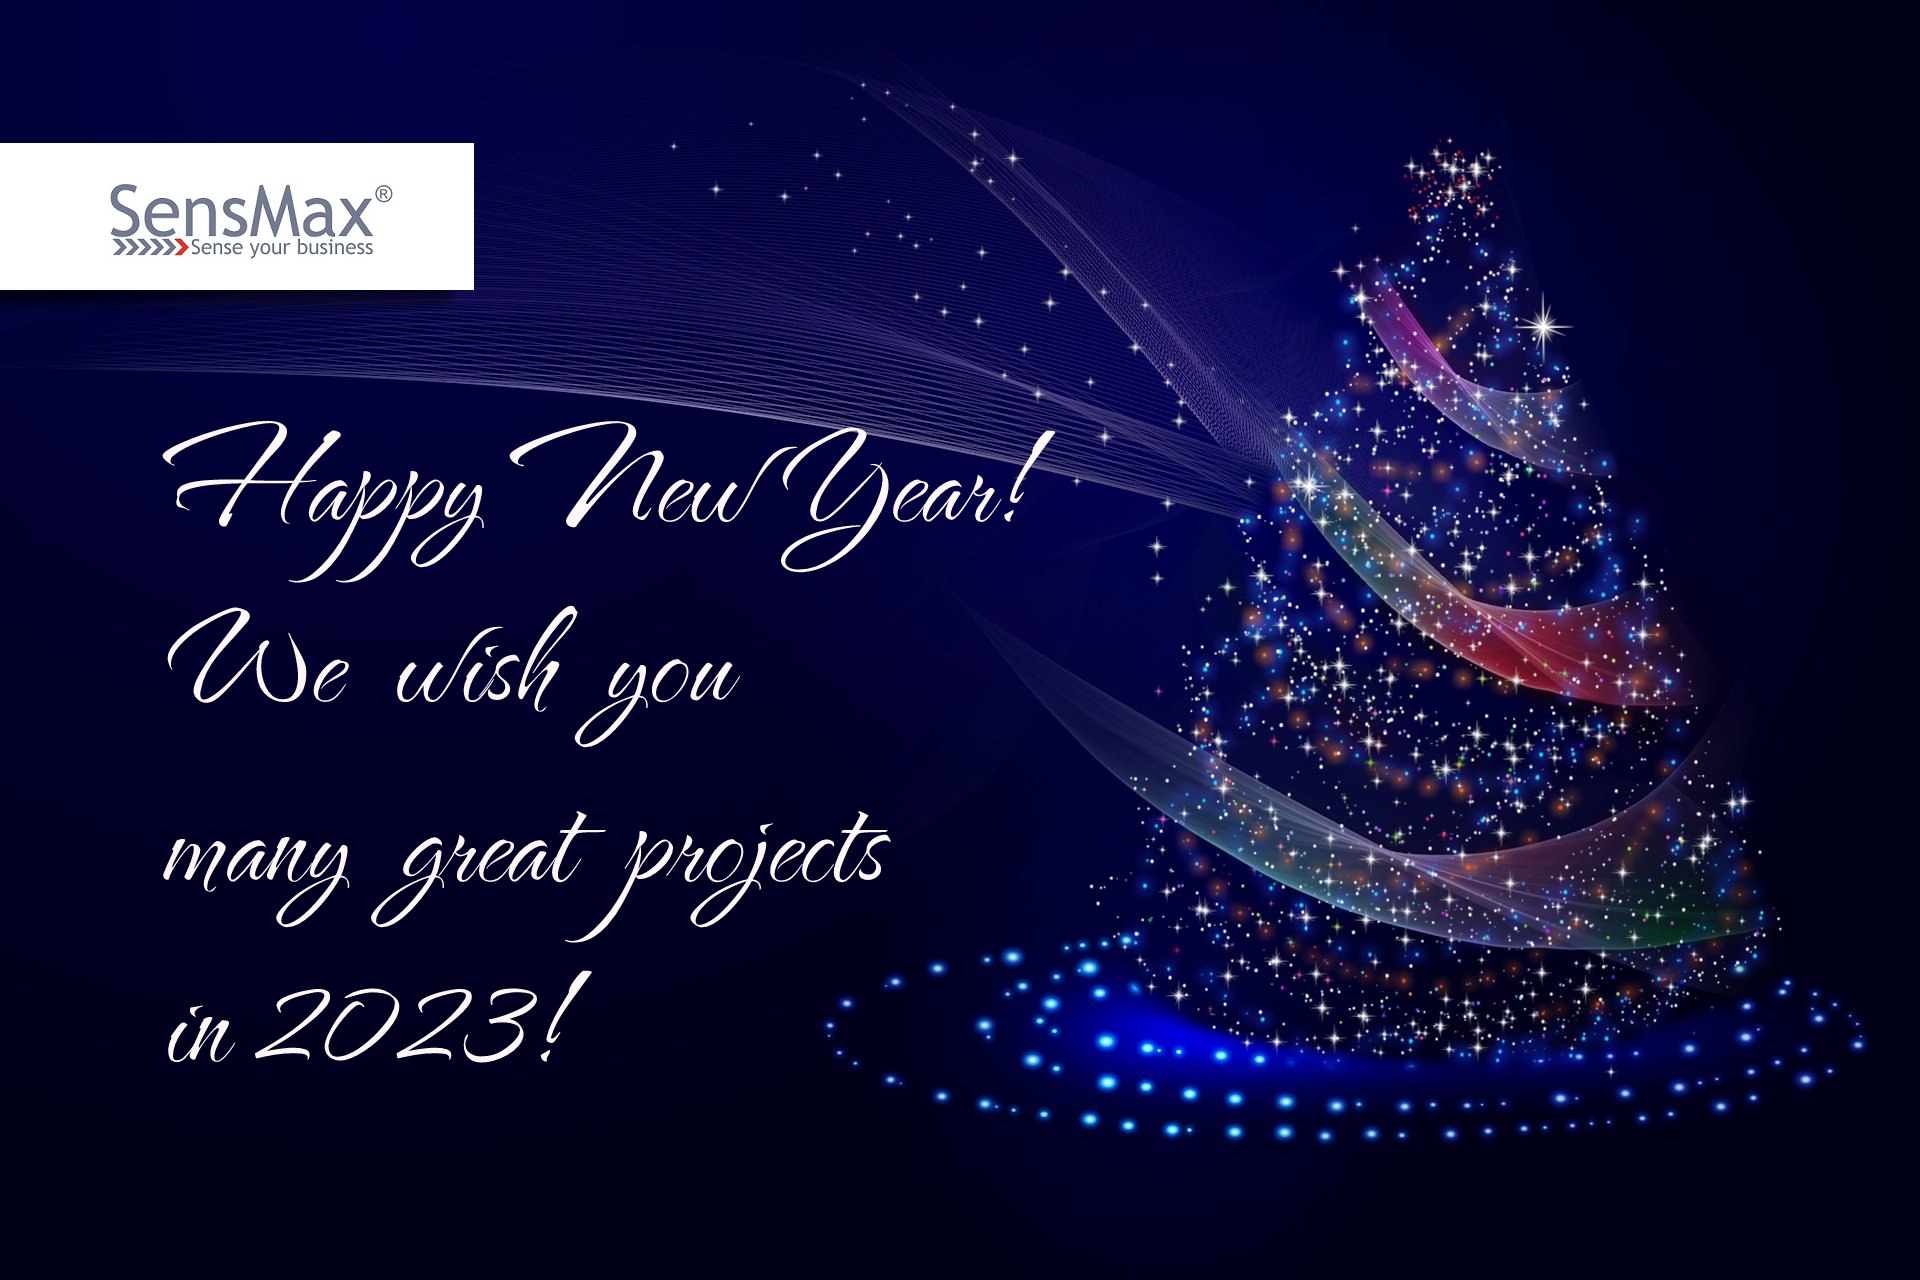 Einblicke in SensMax 2023 und ein frohes neues Jahr